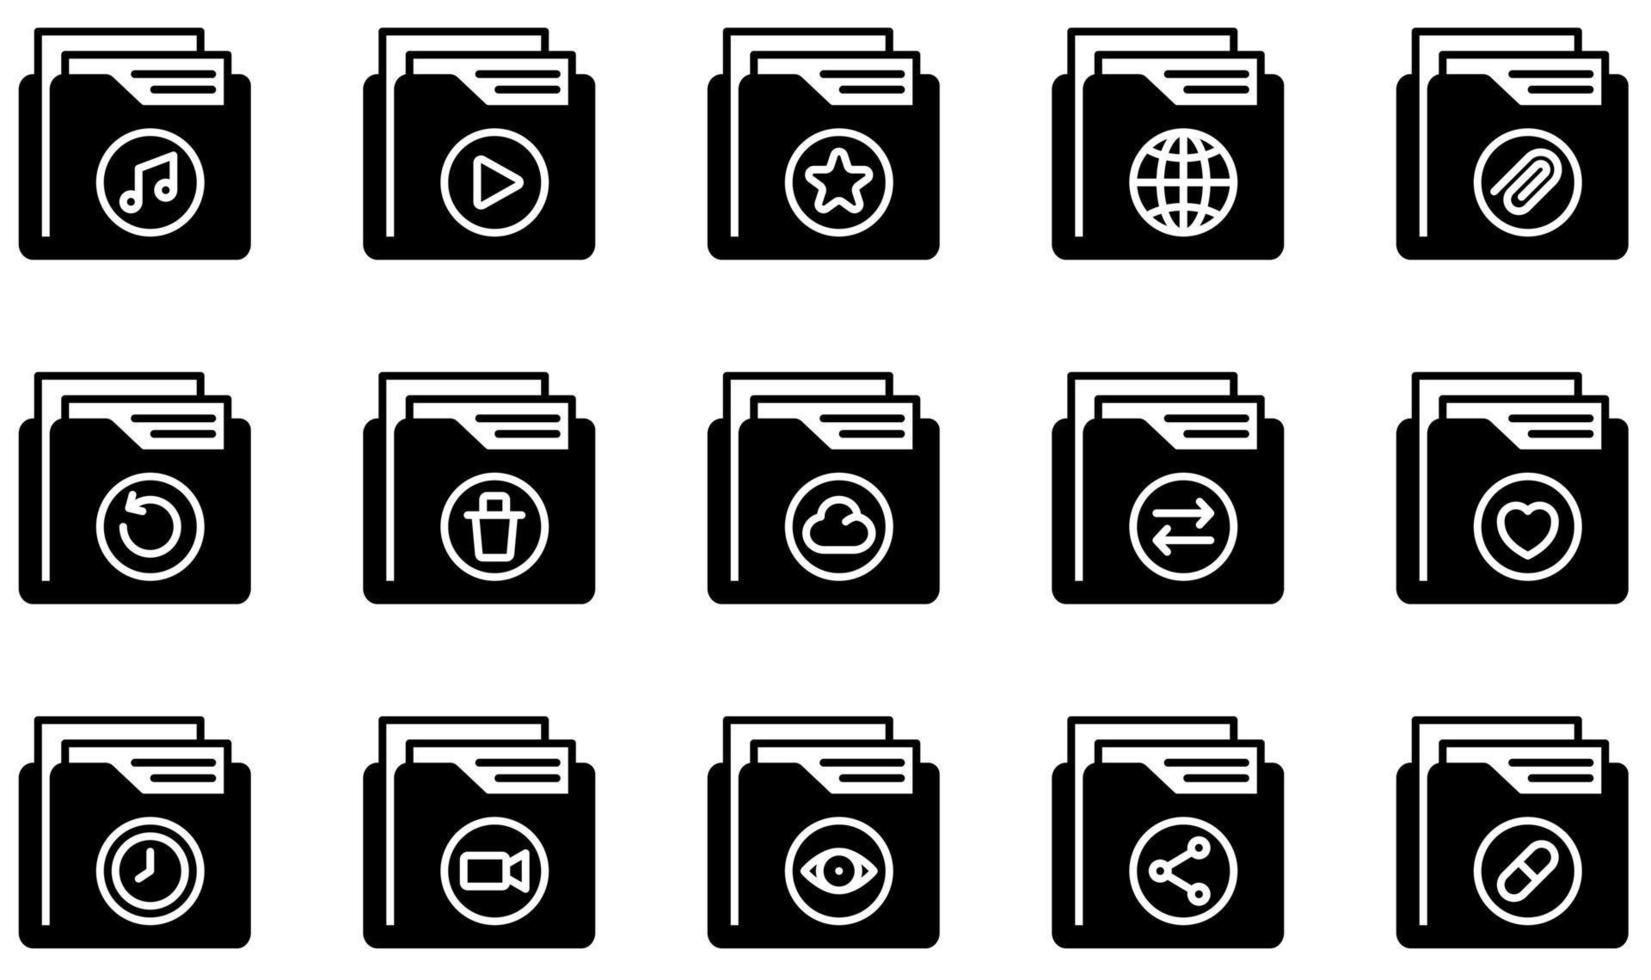 conjunto de ícones vetoriais relacionados a pastas. contém ícones como pasta, arquivo, documento, armazenamento, dados, arquivo e muito mais. vetor